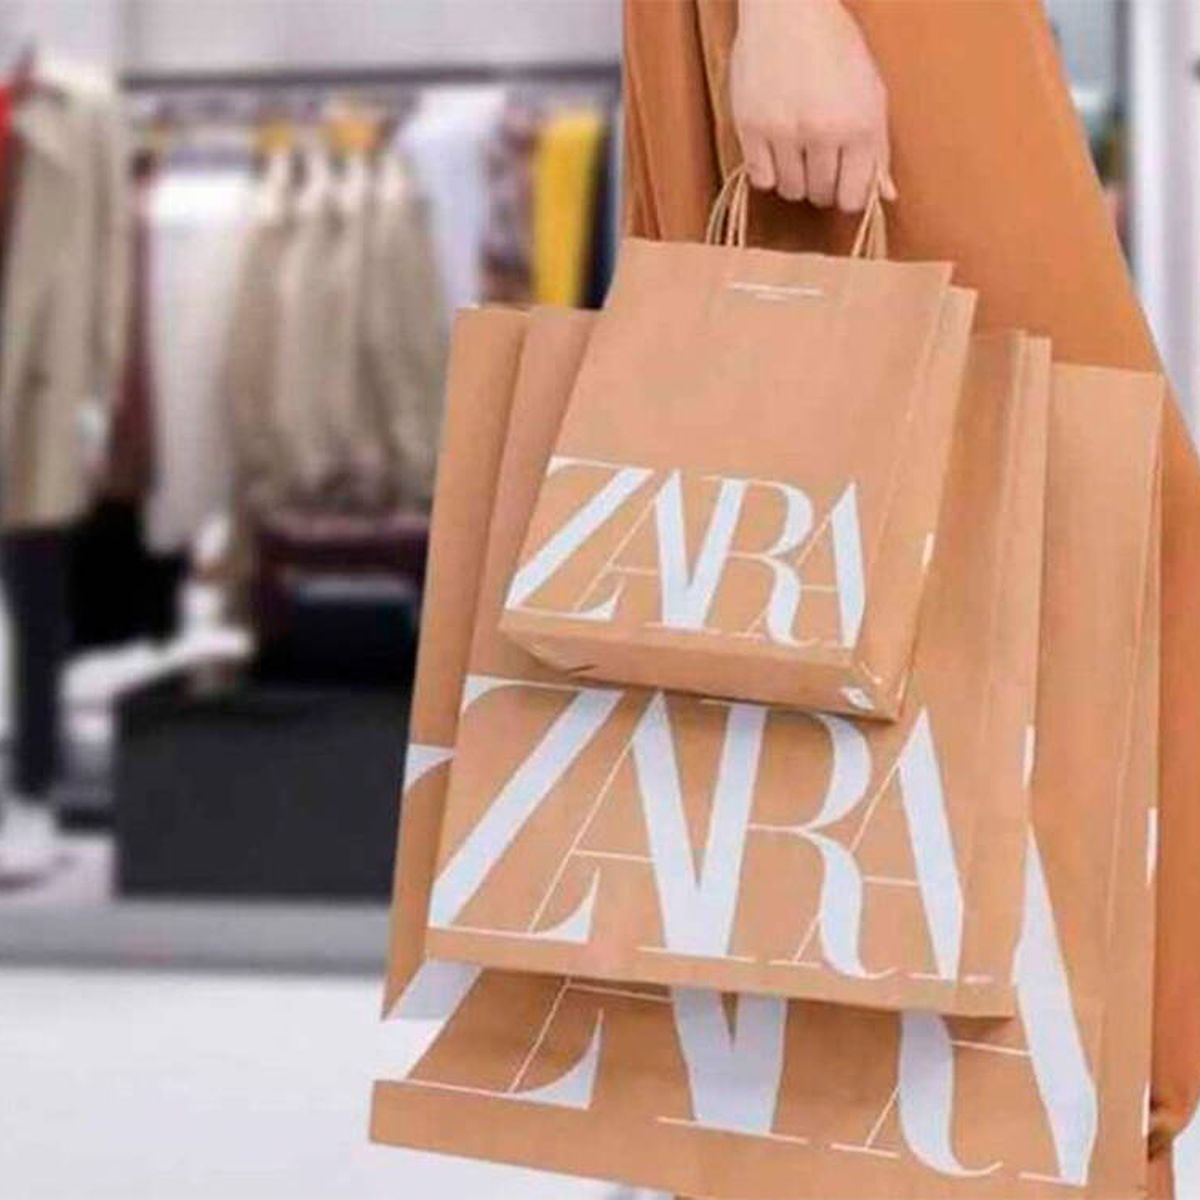 Rebajas de verano 2021 en Zara: descuentos y ofertas en ropa de